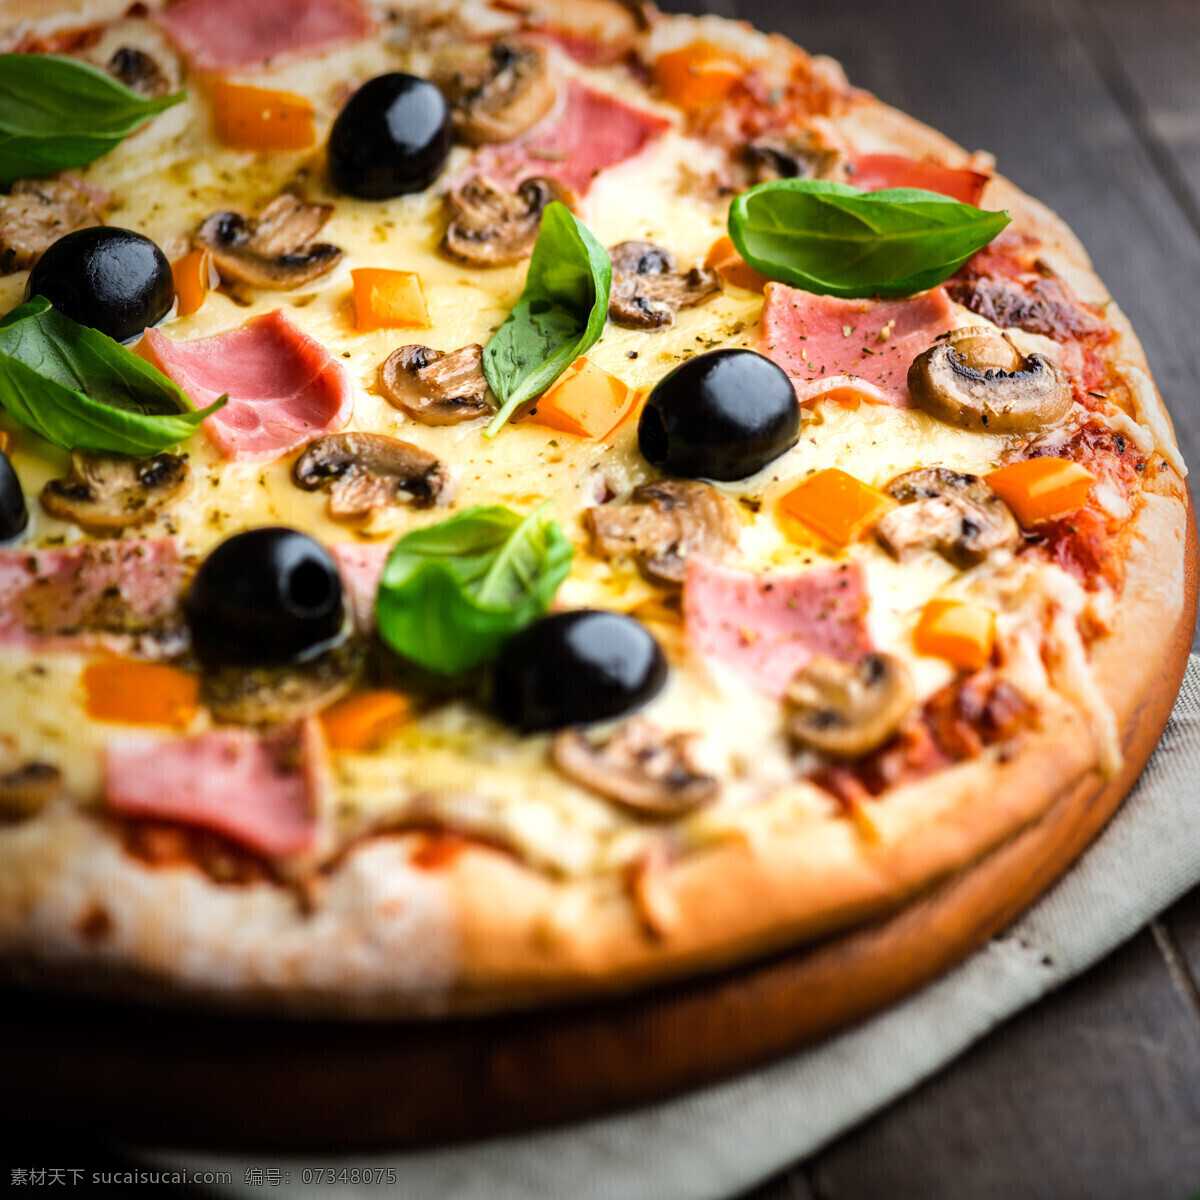 美味的披萨 披萨 披萨美食 意大利披萨 国外美食 美味 外国美食 餐饮美食 黑色